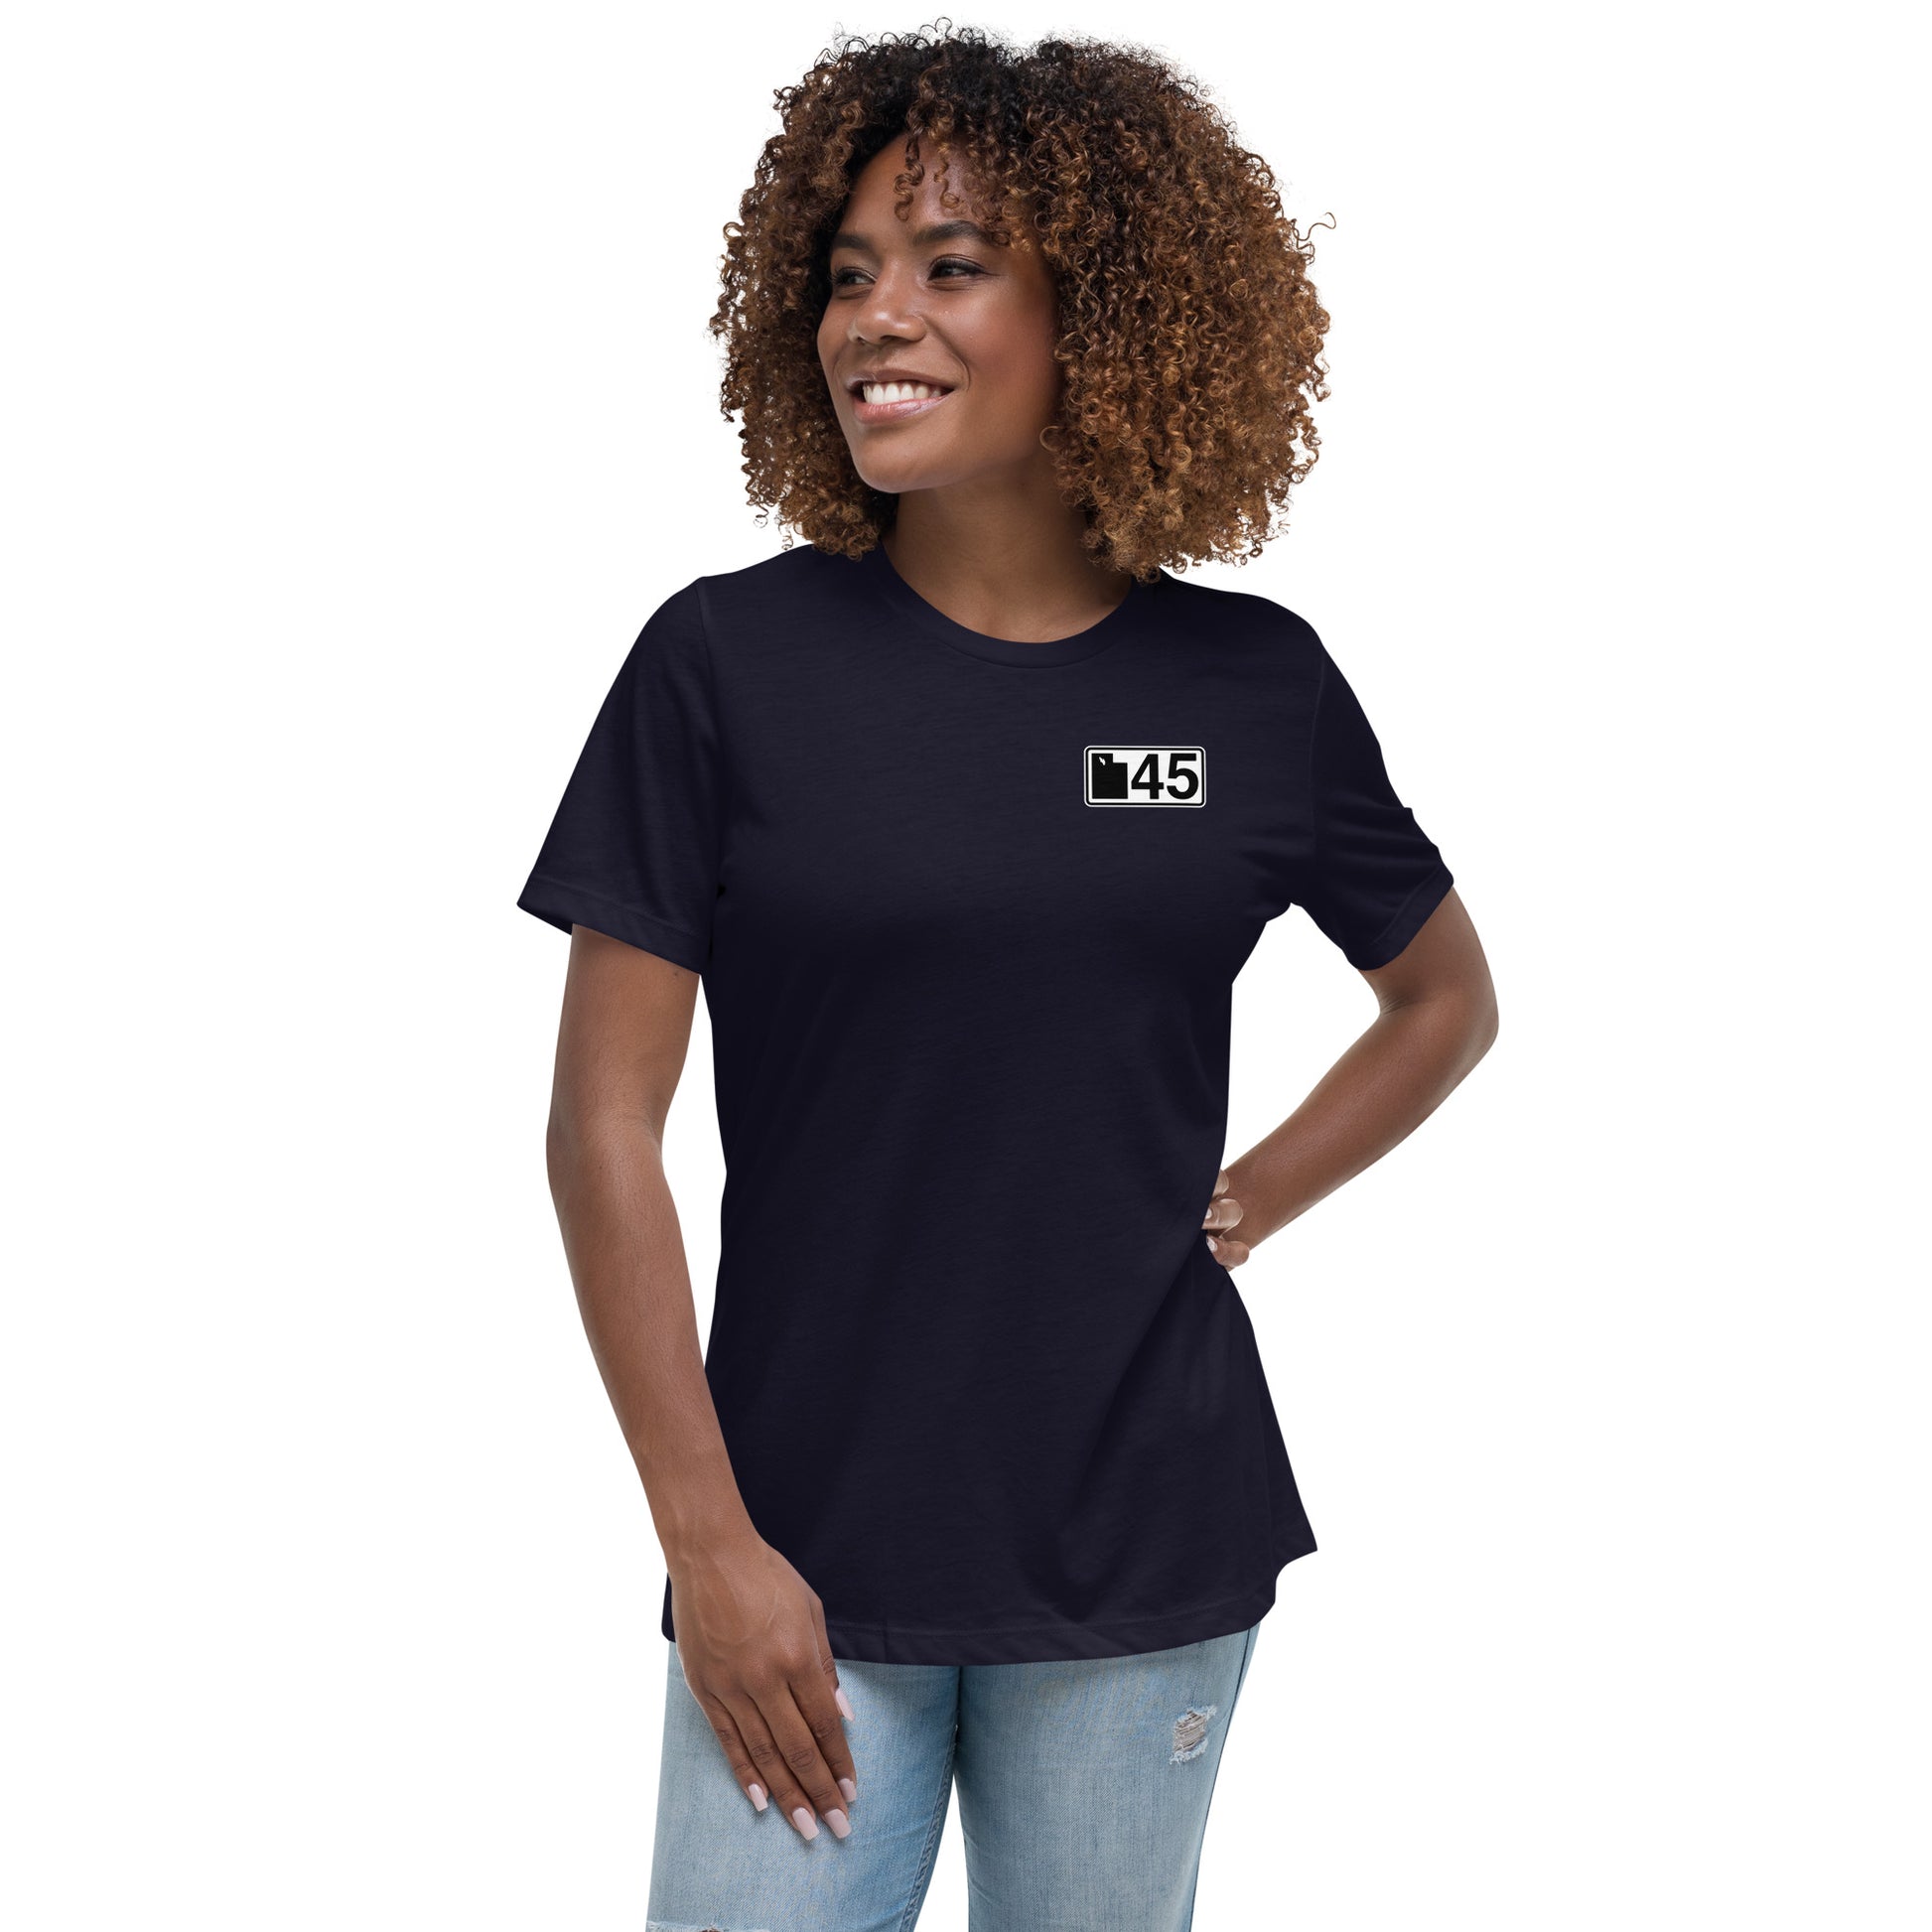 UT45 – Store My T-Shirt Womens